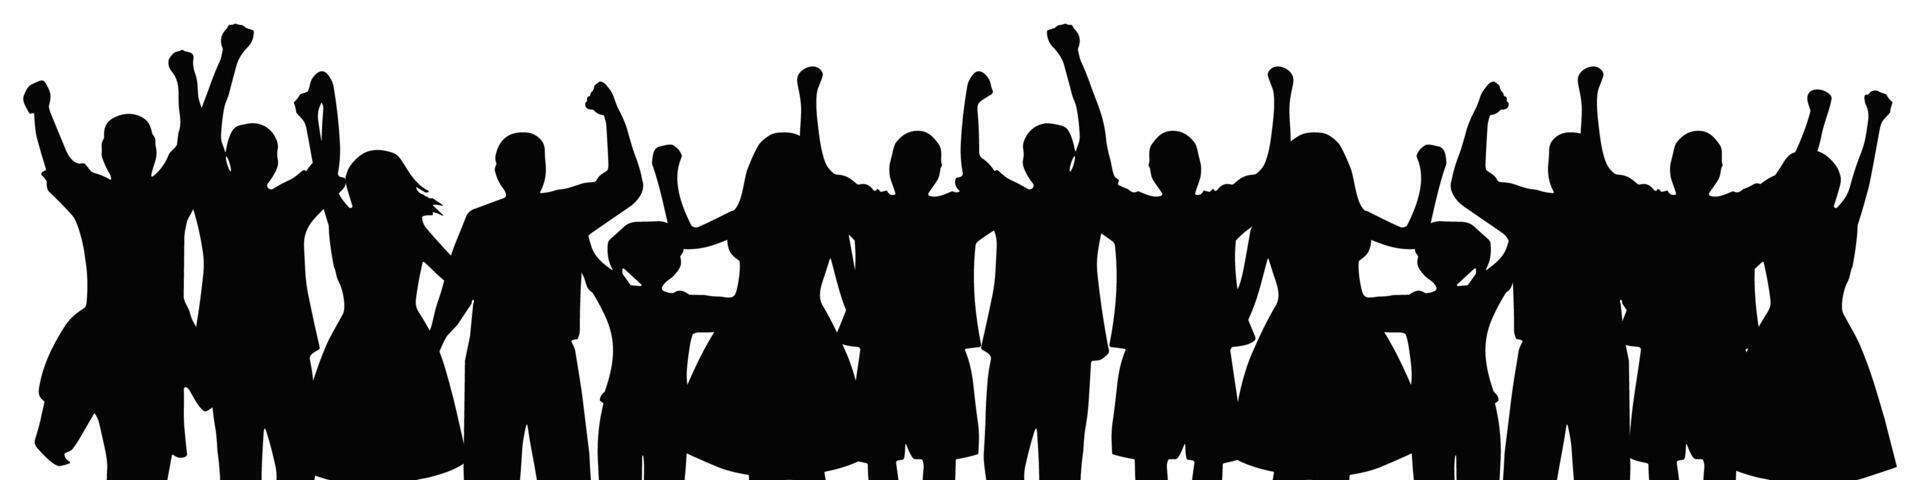 silhouet van een groep van mensen, vieren zege, gelukkig. vector illustratie